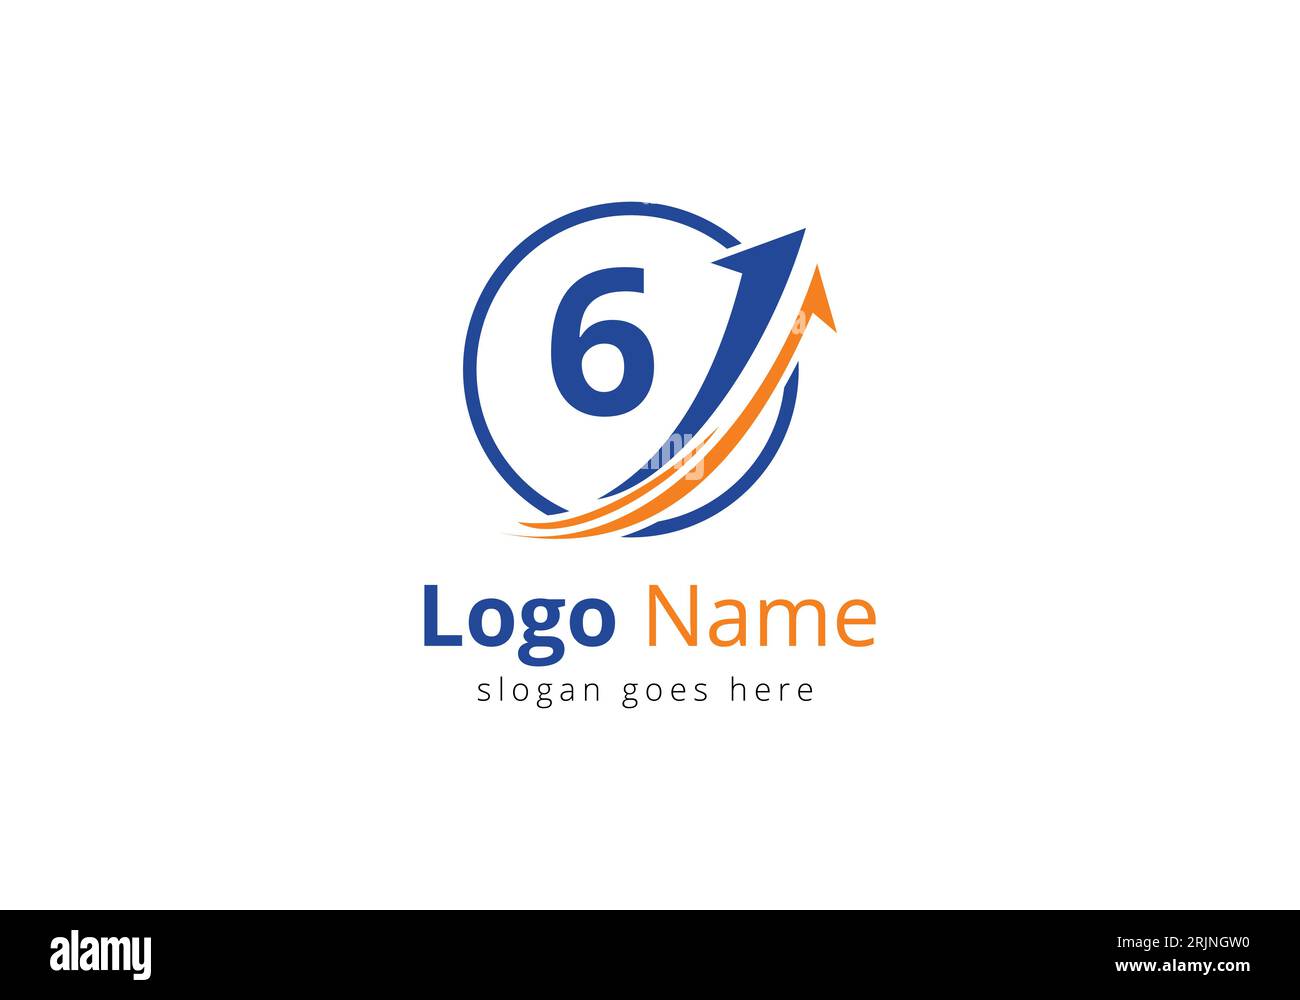 Logo de financement avec concept de 6 lettres. Concept de logo financier ou de réussite. Logo pour l'entreprise comptable et l'identité de l'entreprise Illustration de Vecteur